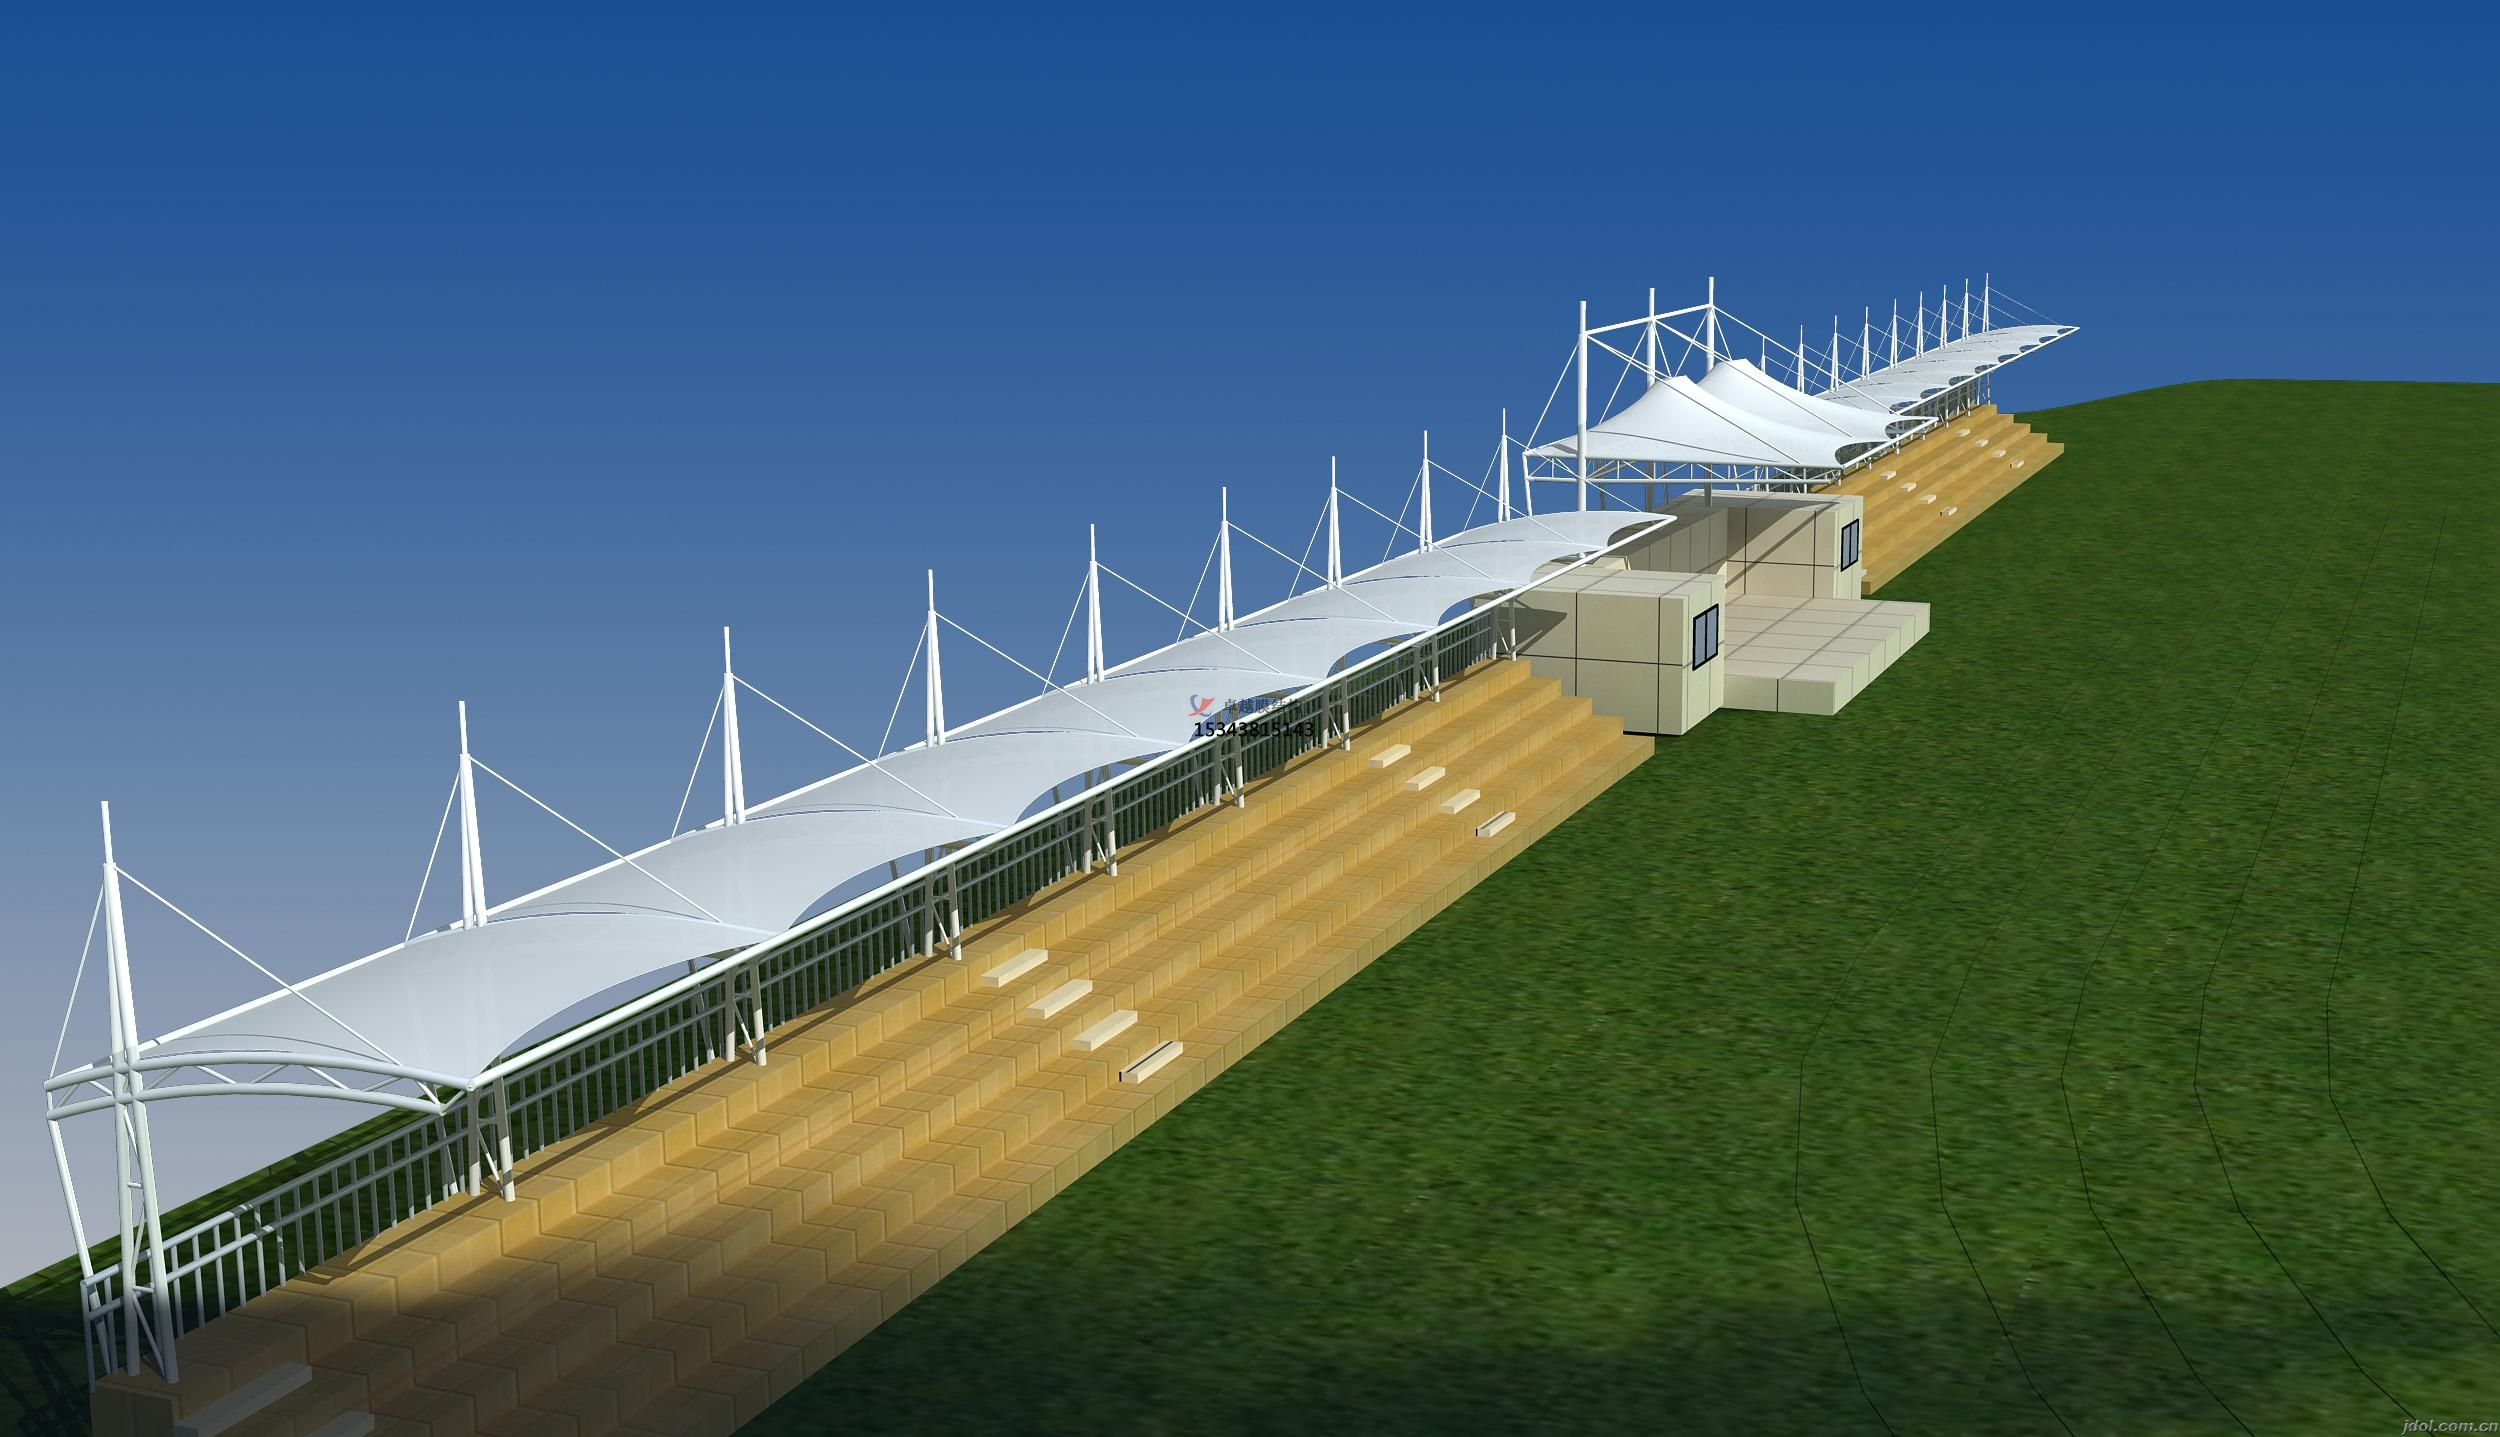 原阳体育公园膜结构【看台雨棚】门球场案例